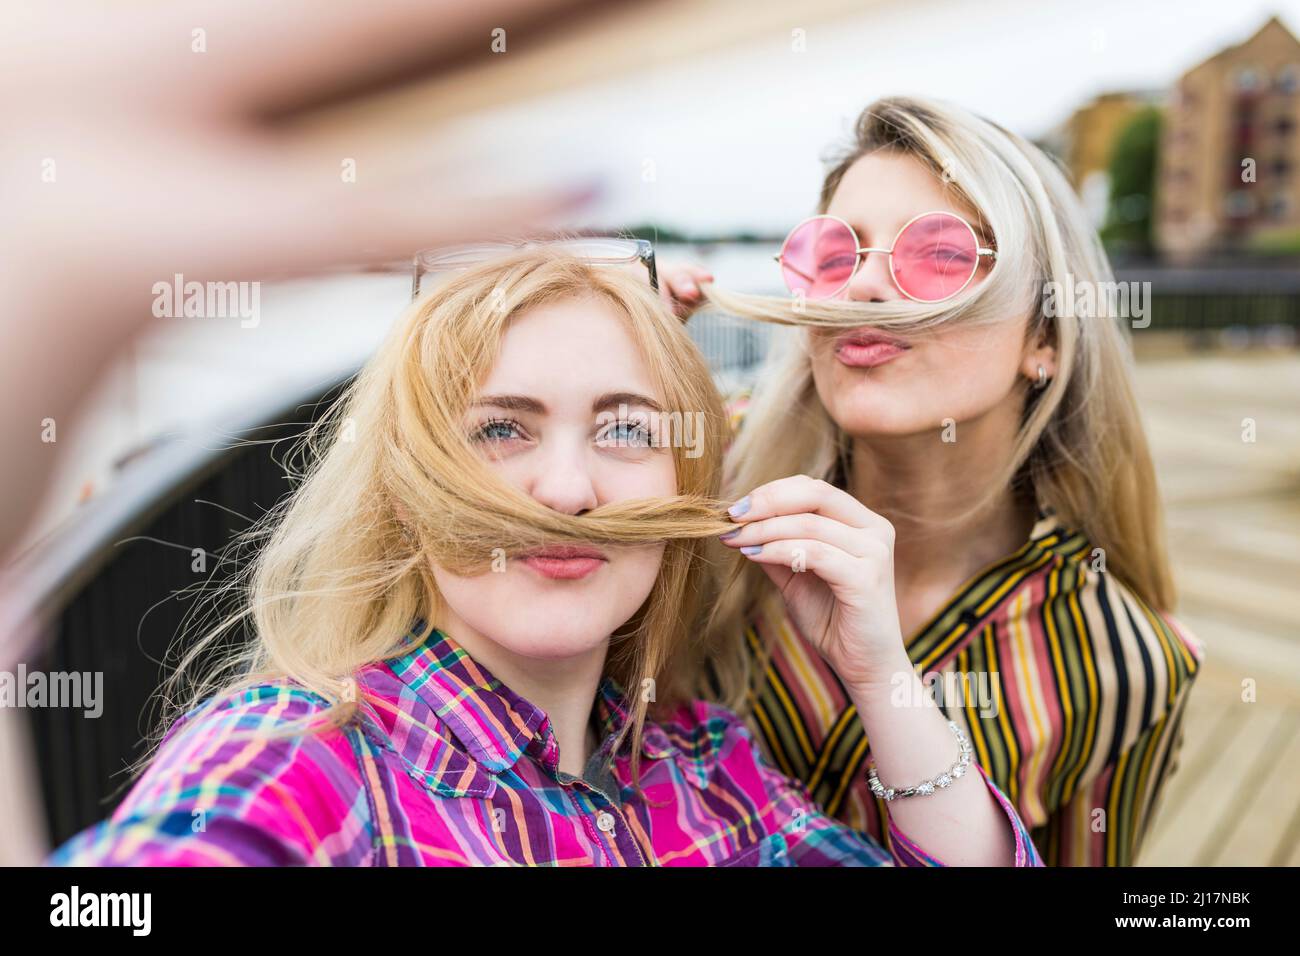 Lächelnde blonde Teenager, die Schnurrbärte machen und Selfie machen Stockfoto